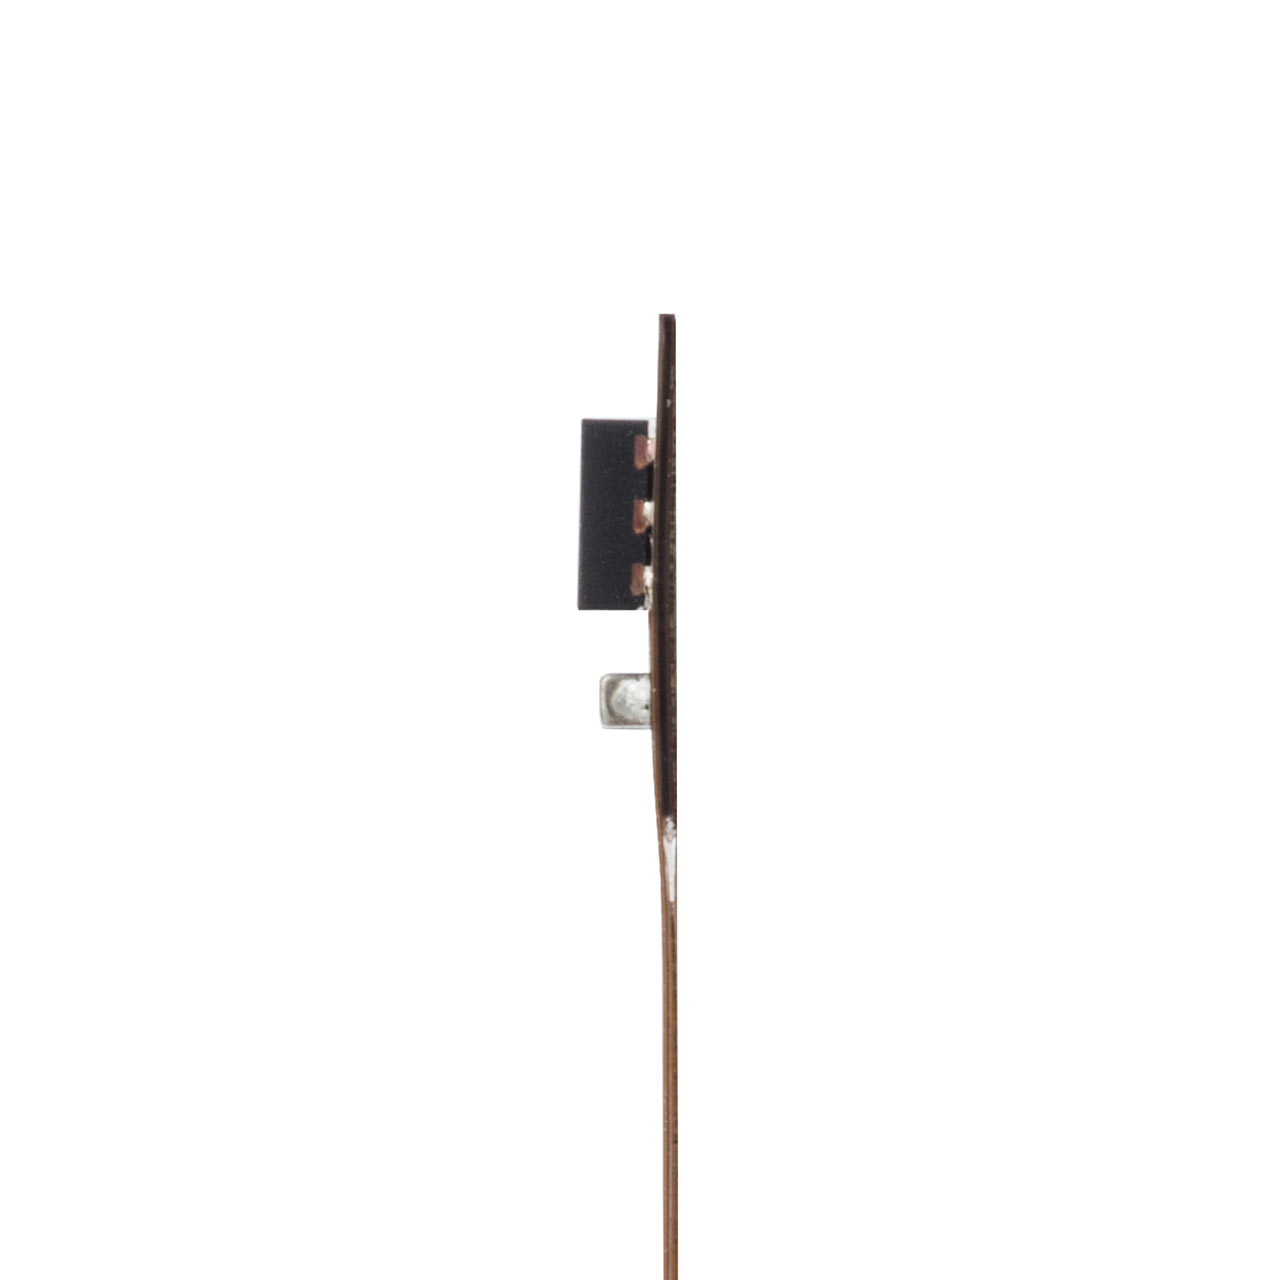 温湿度センサー(ワイヤレス・Bluetooth・ビーコン・ログ記録・ログッタ・ケーブル計測30cm) UNI-01-C003